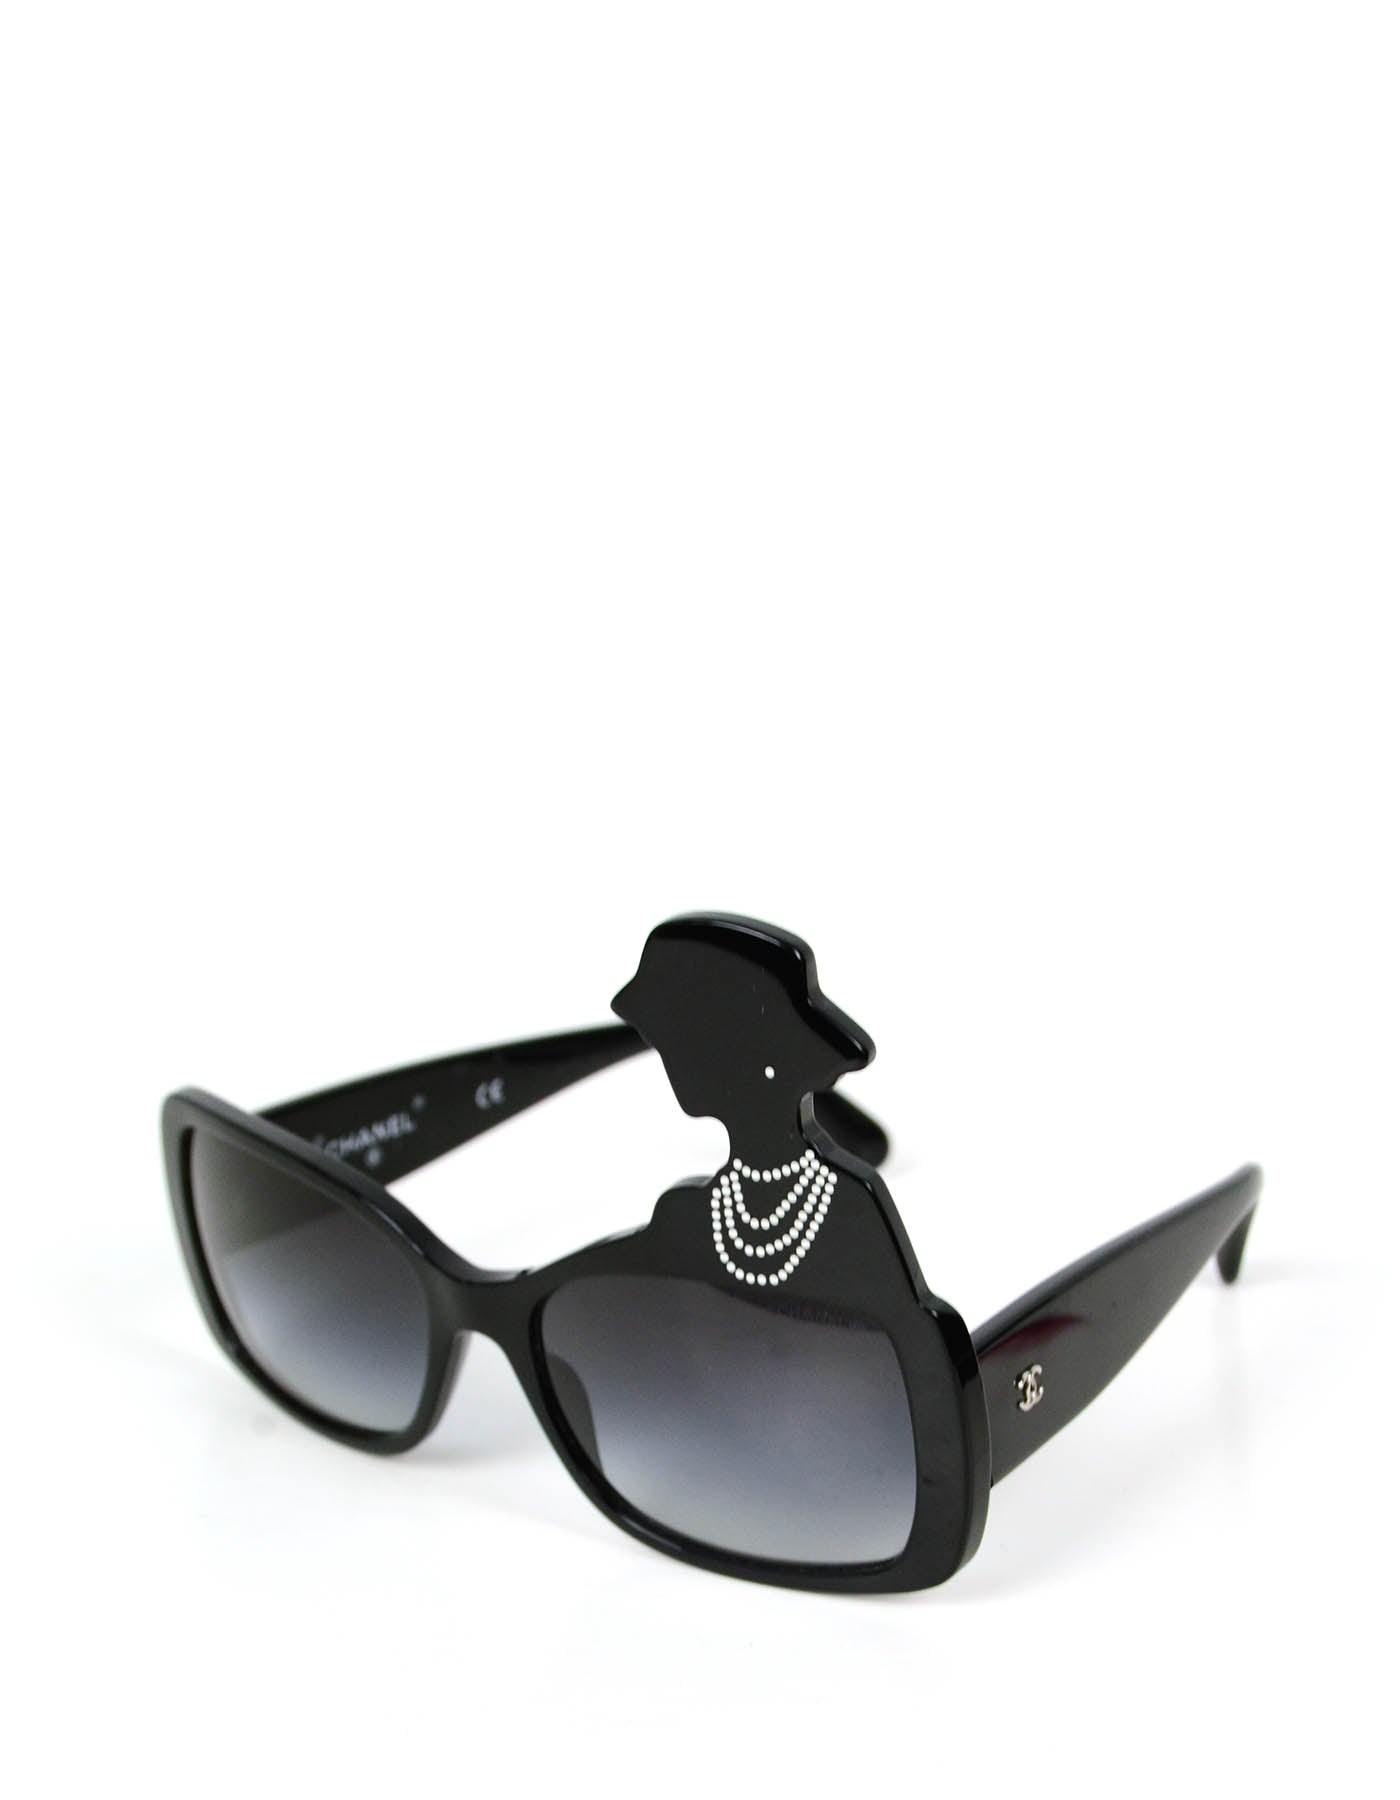 Chanel Acetate Strass Square Polarized Sunglasses Black – Coco